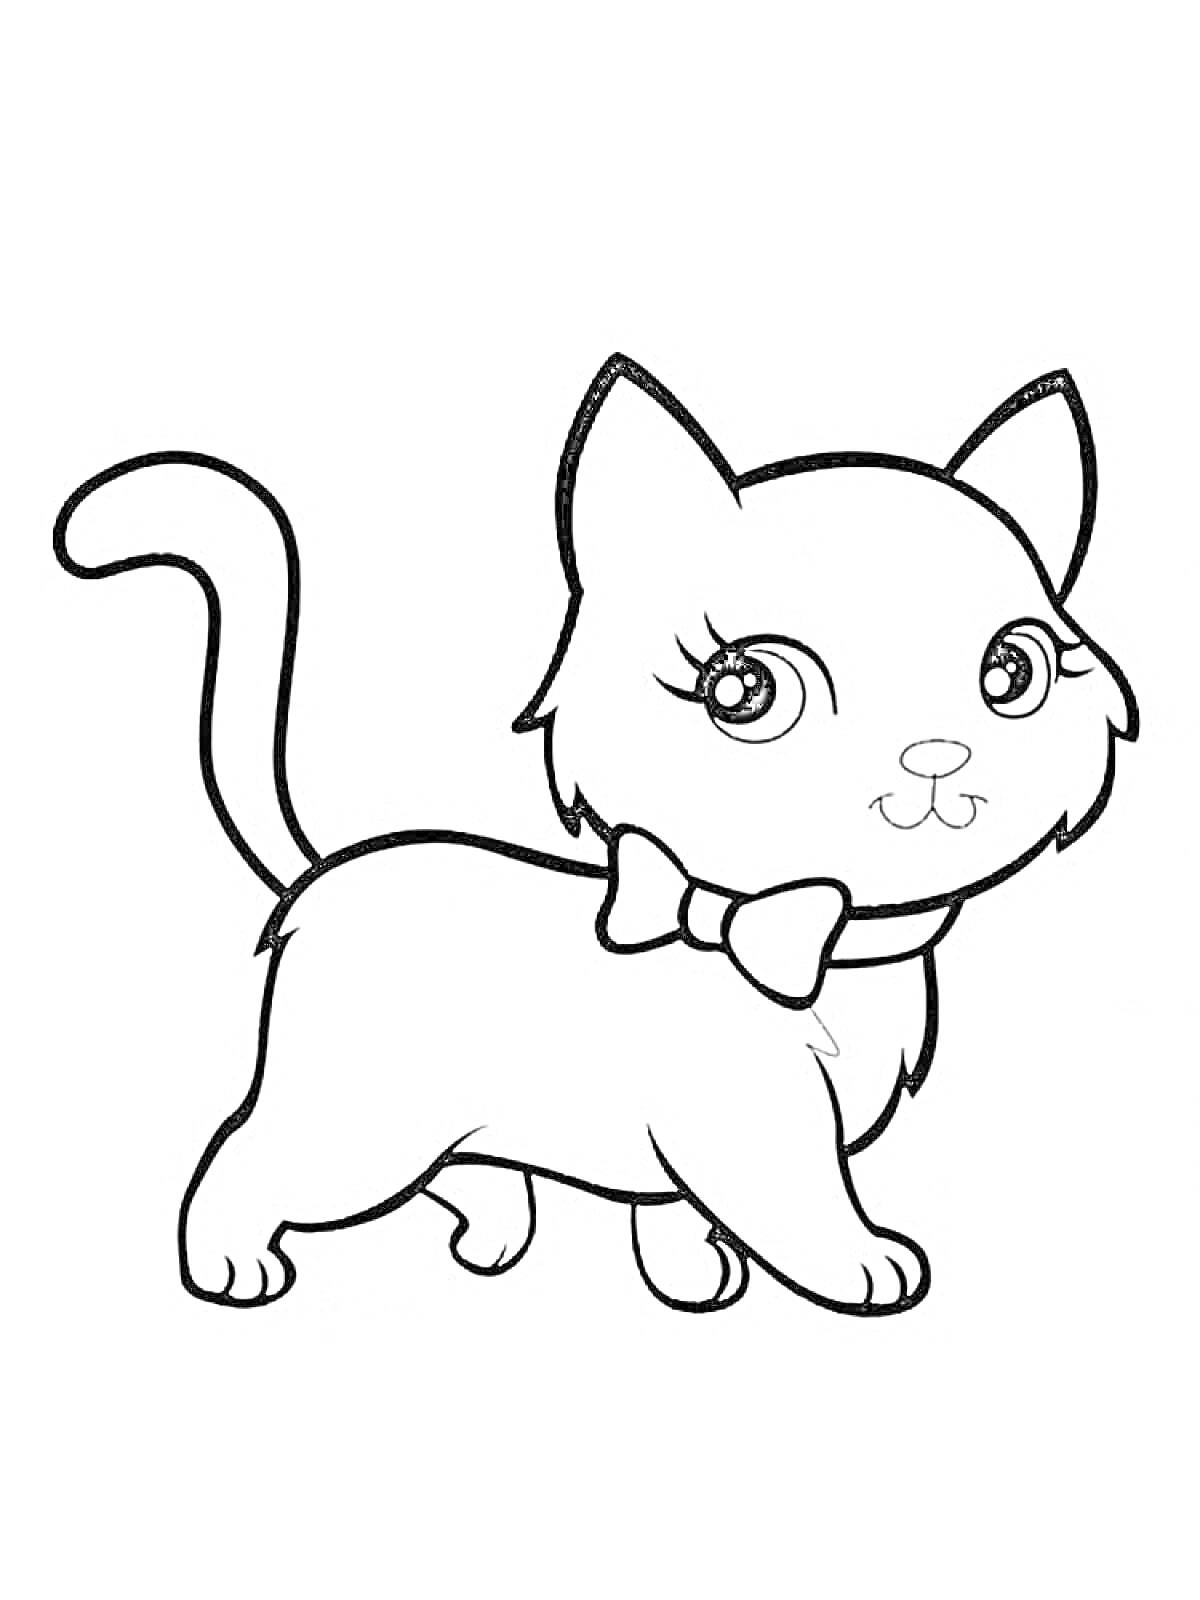 Раскраска Котик с бантом на шее